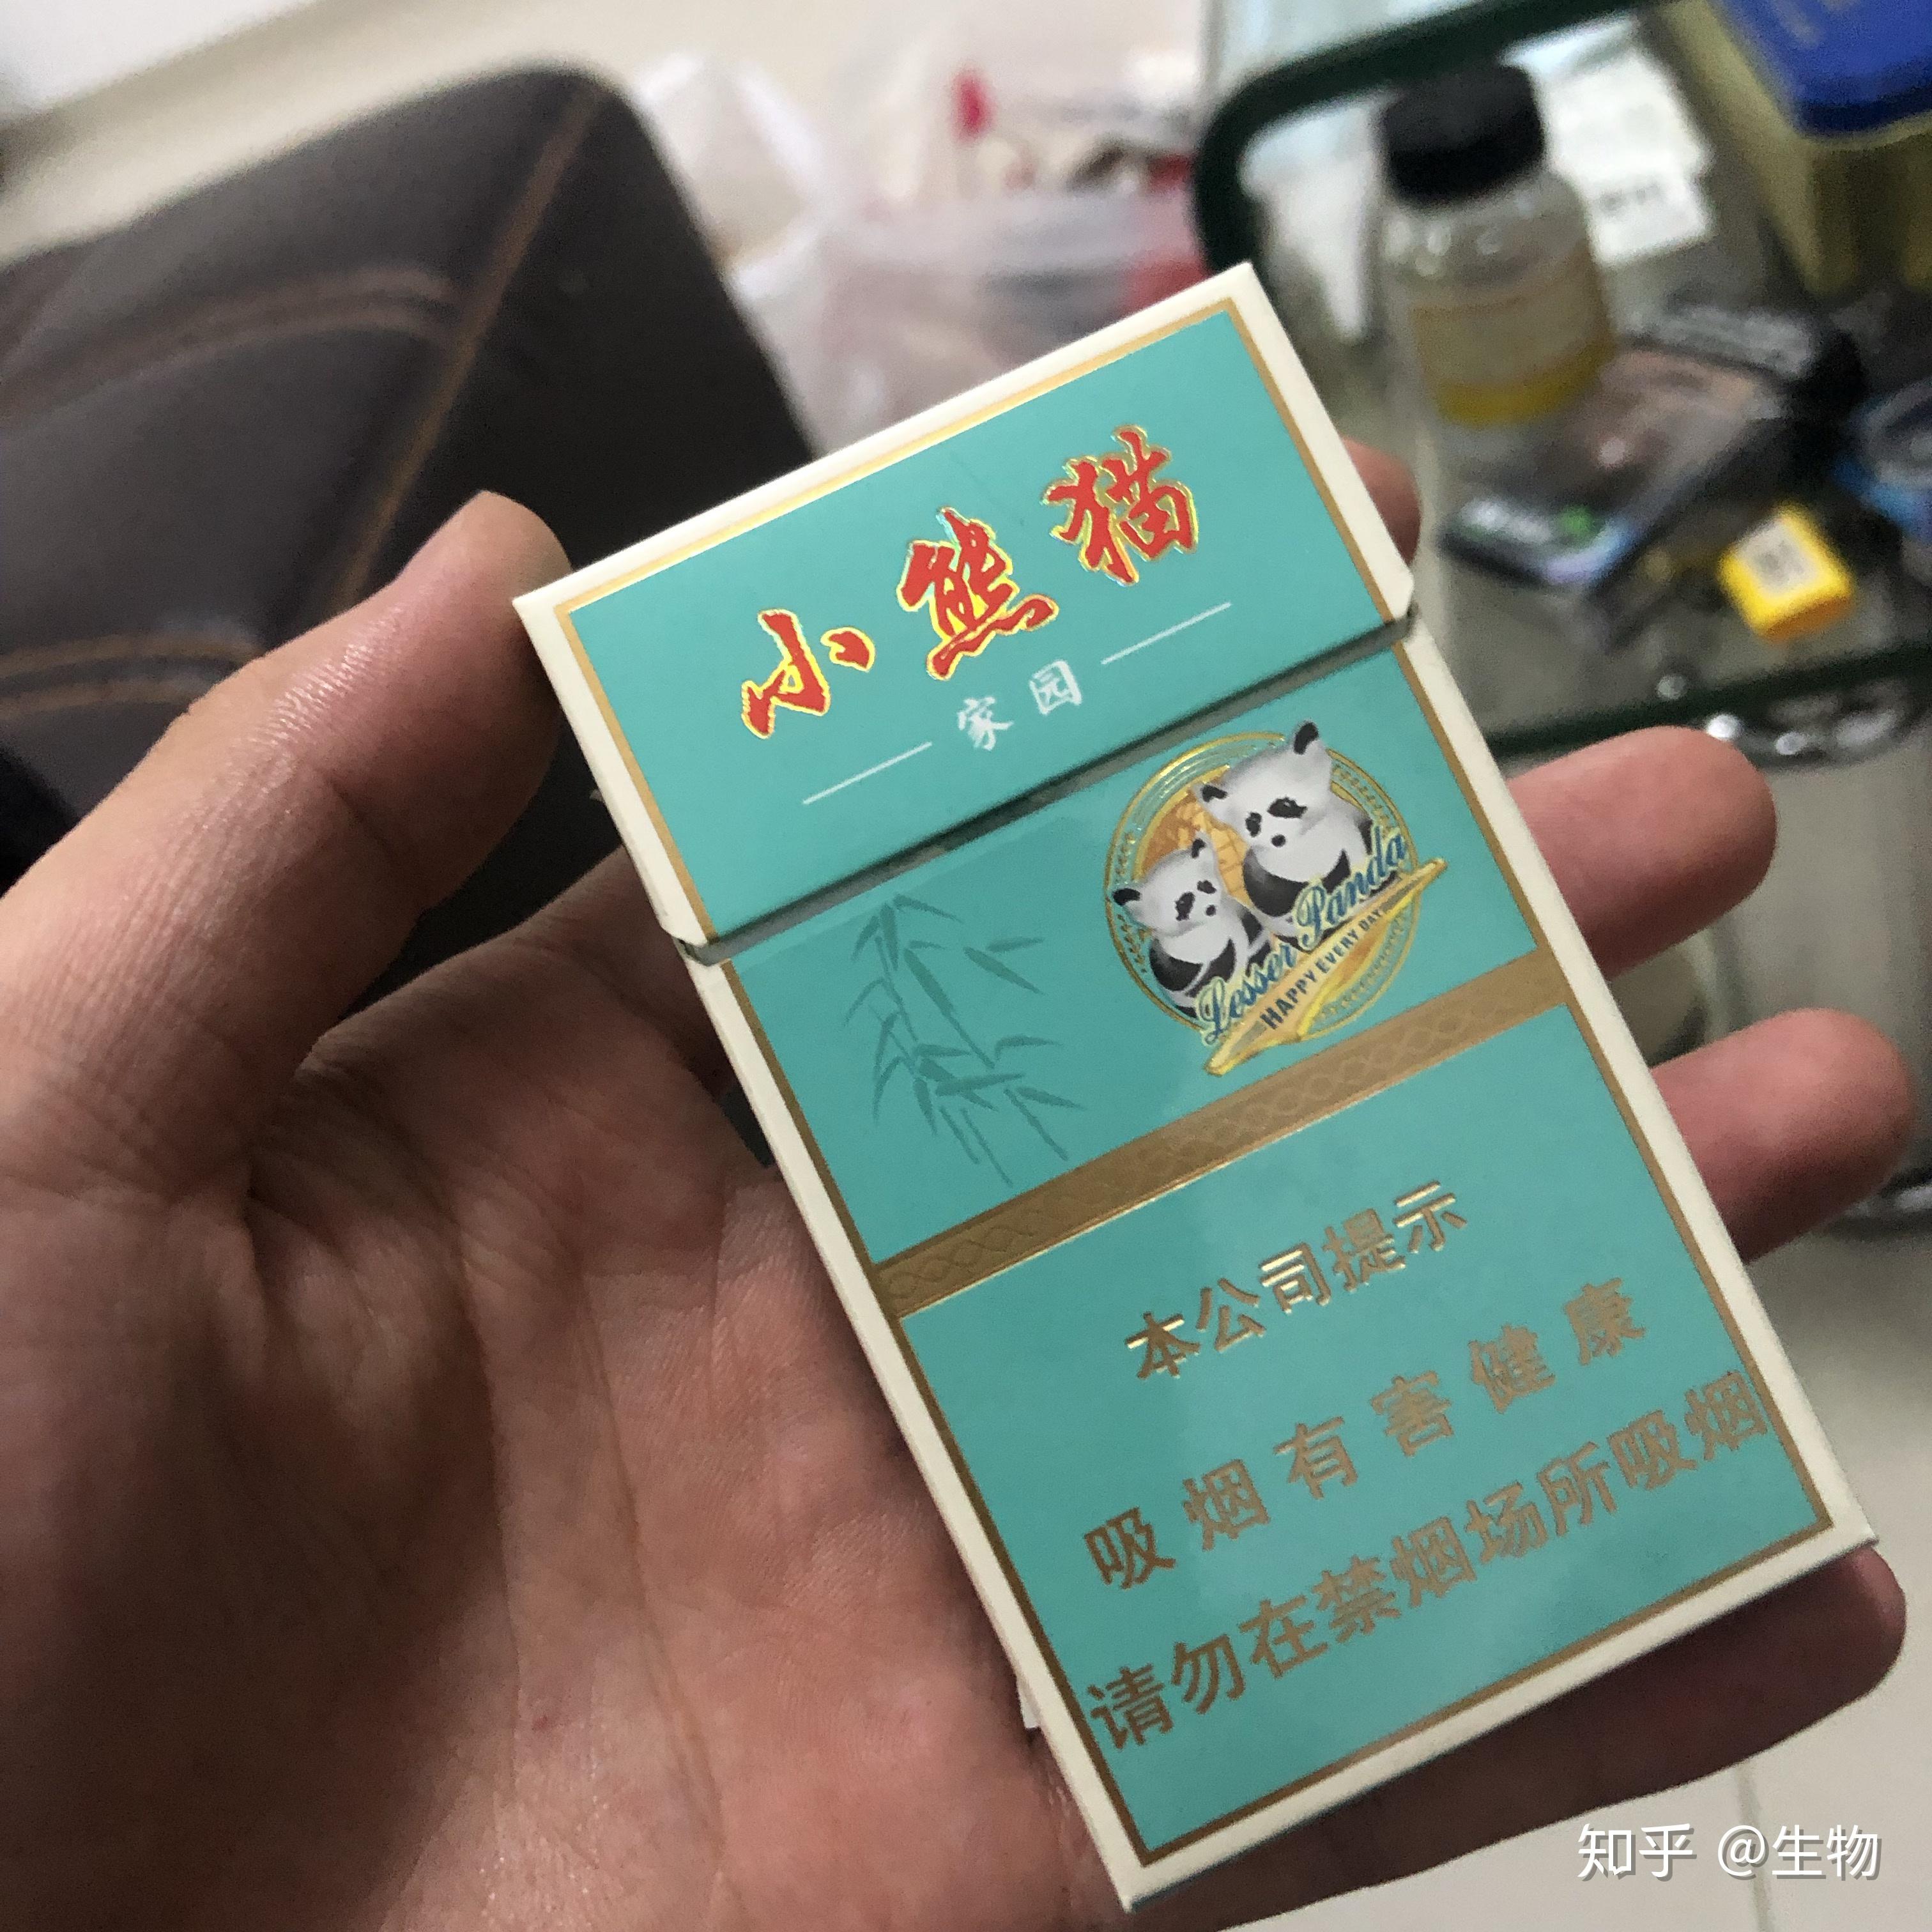 三根一包的熊猫香烟图片